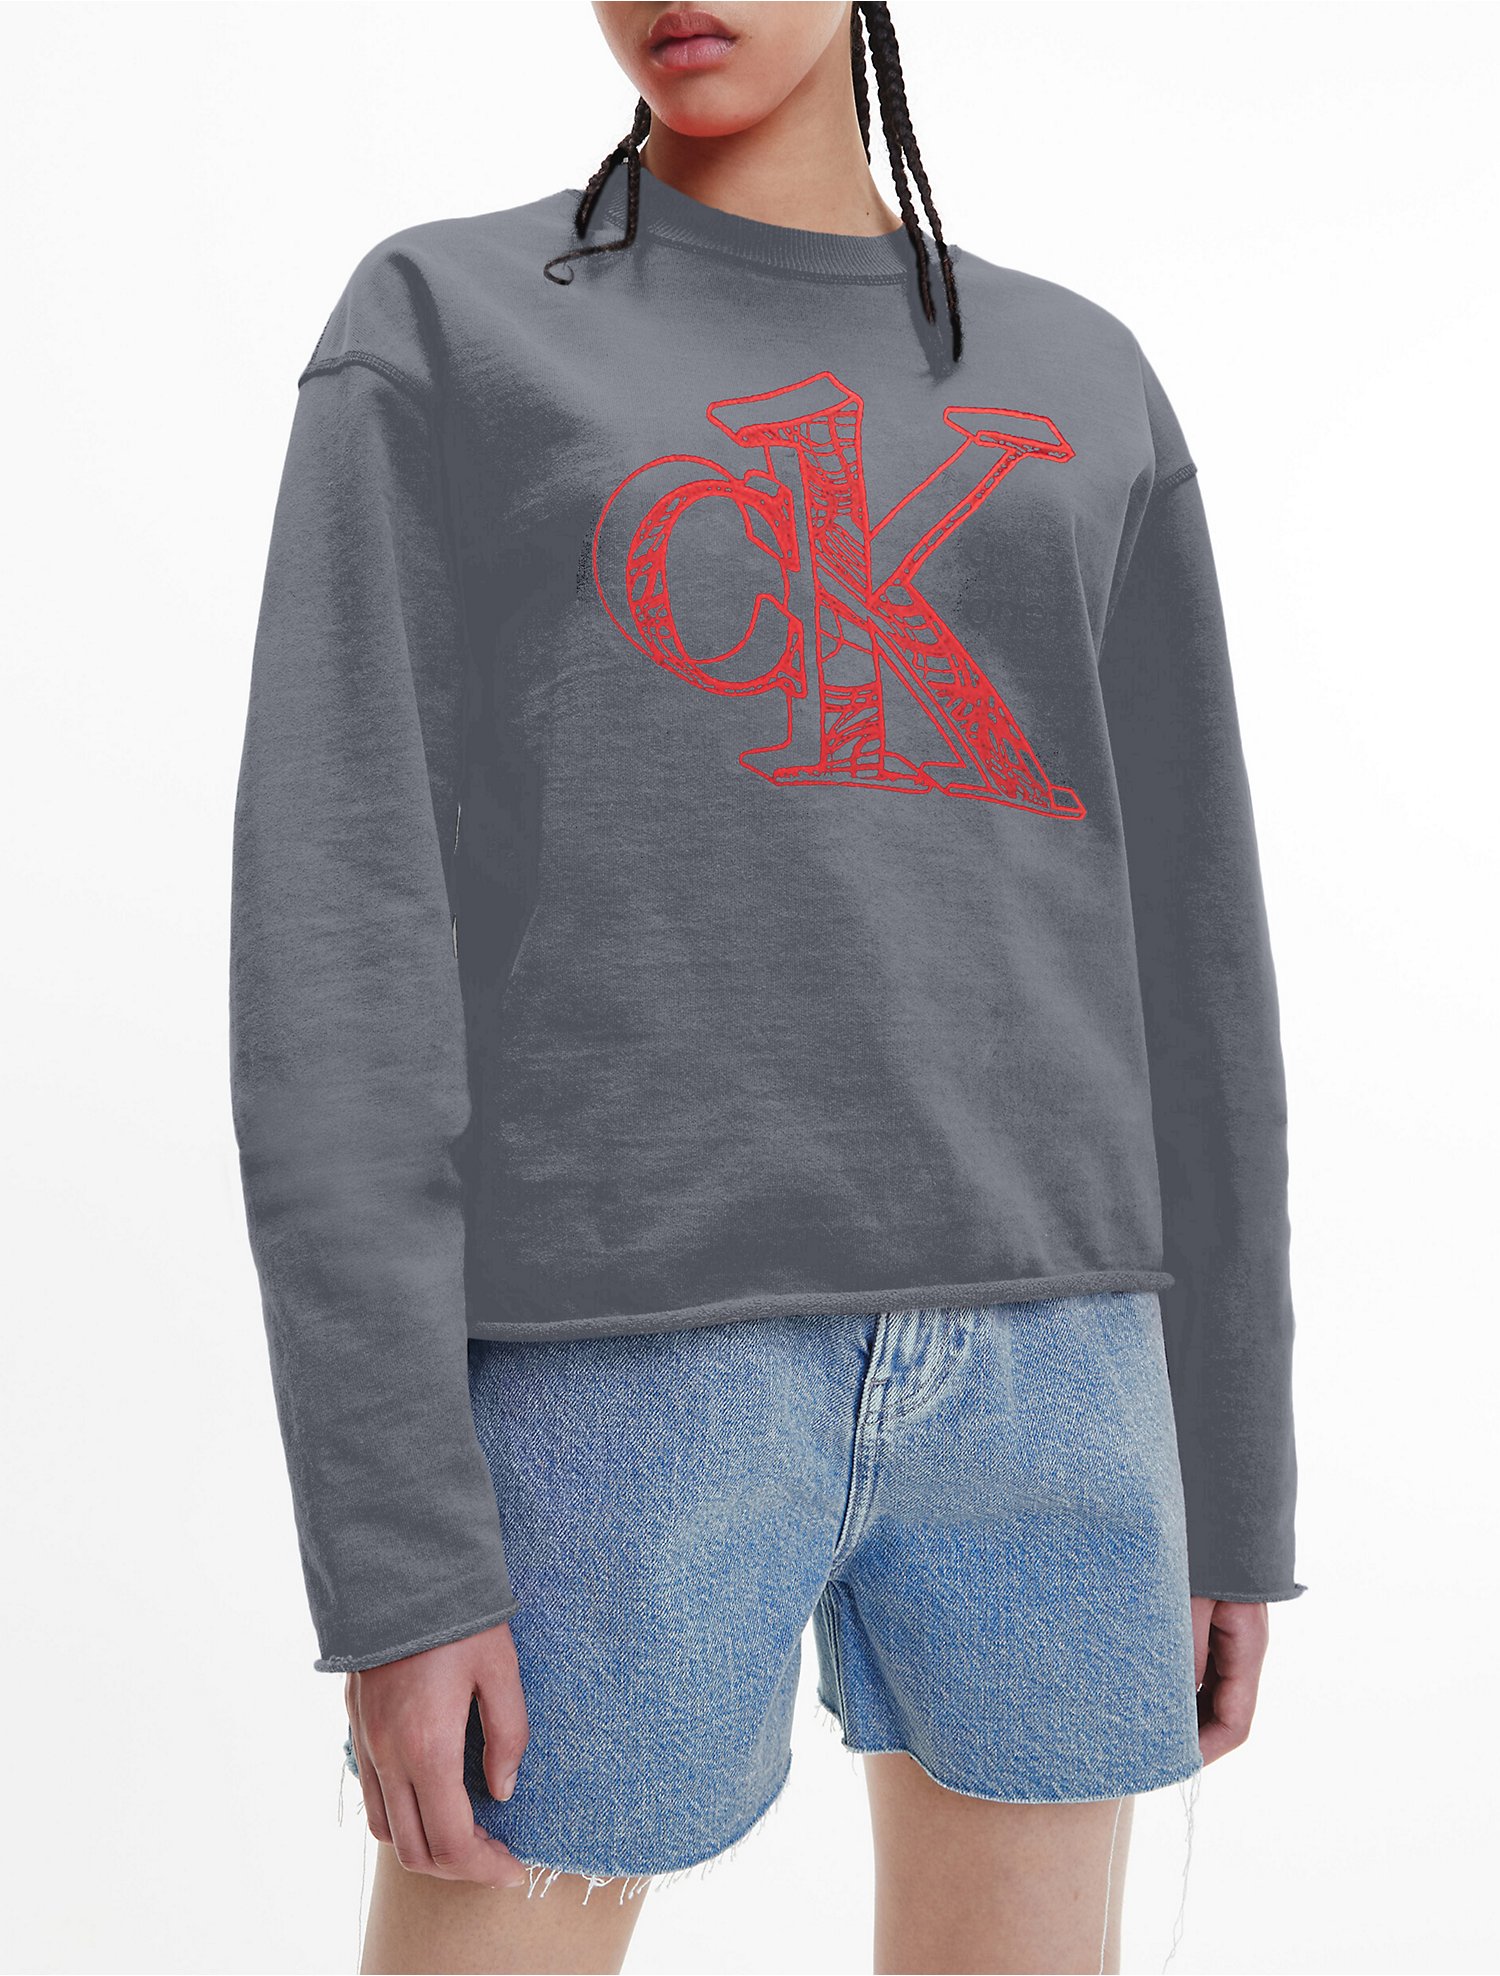 CK One Gender Inclusive Oversized Garment-Dyed Sweatshirt | Calvin Klein®  USA